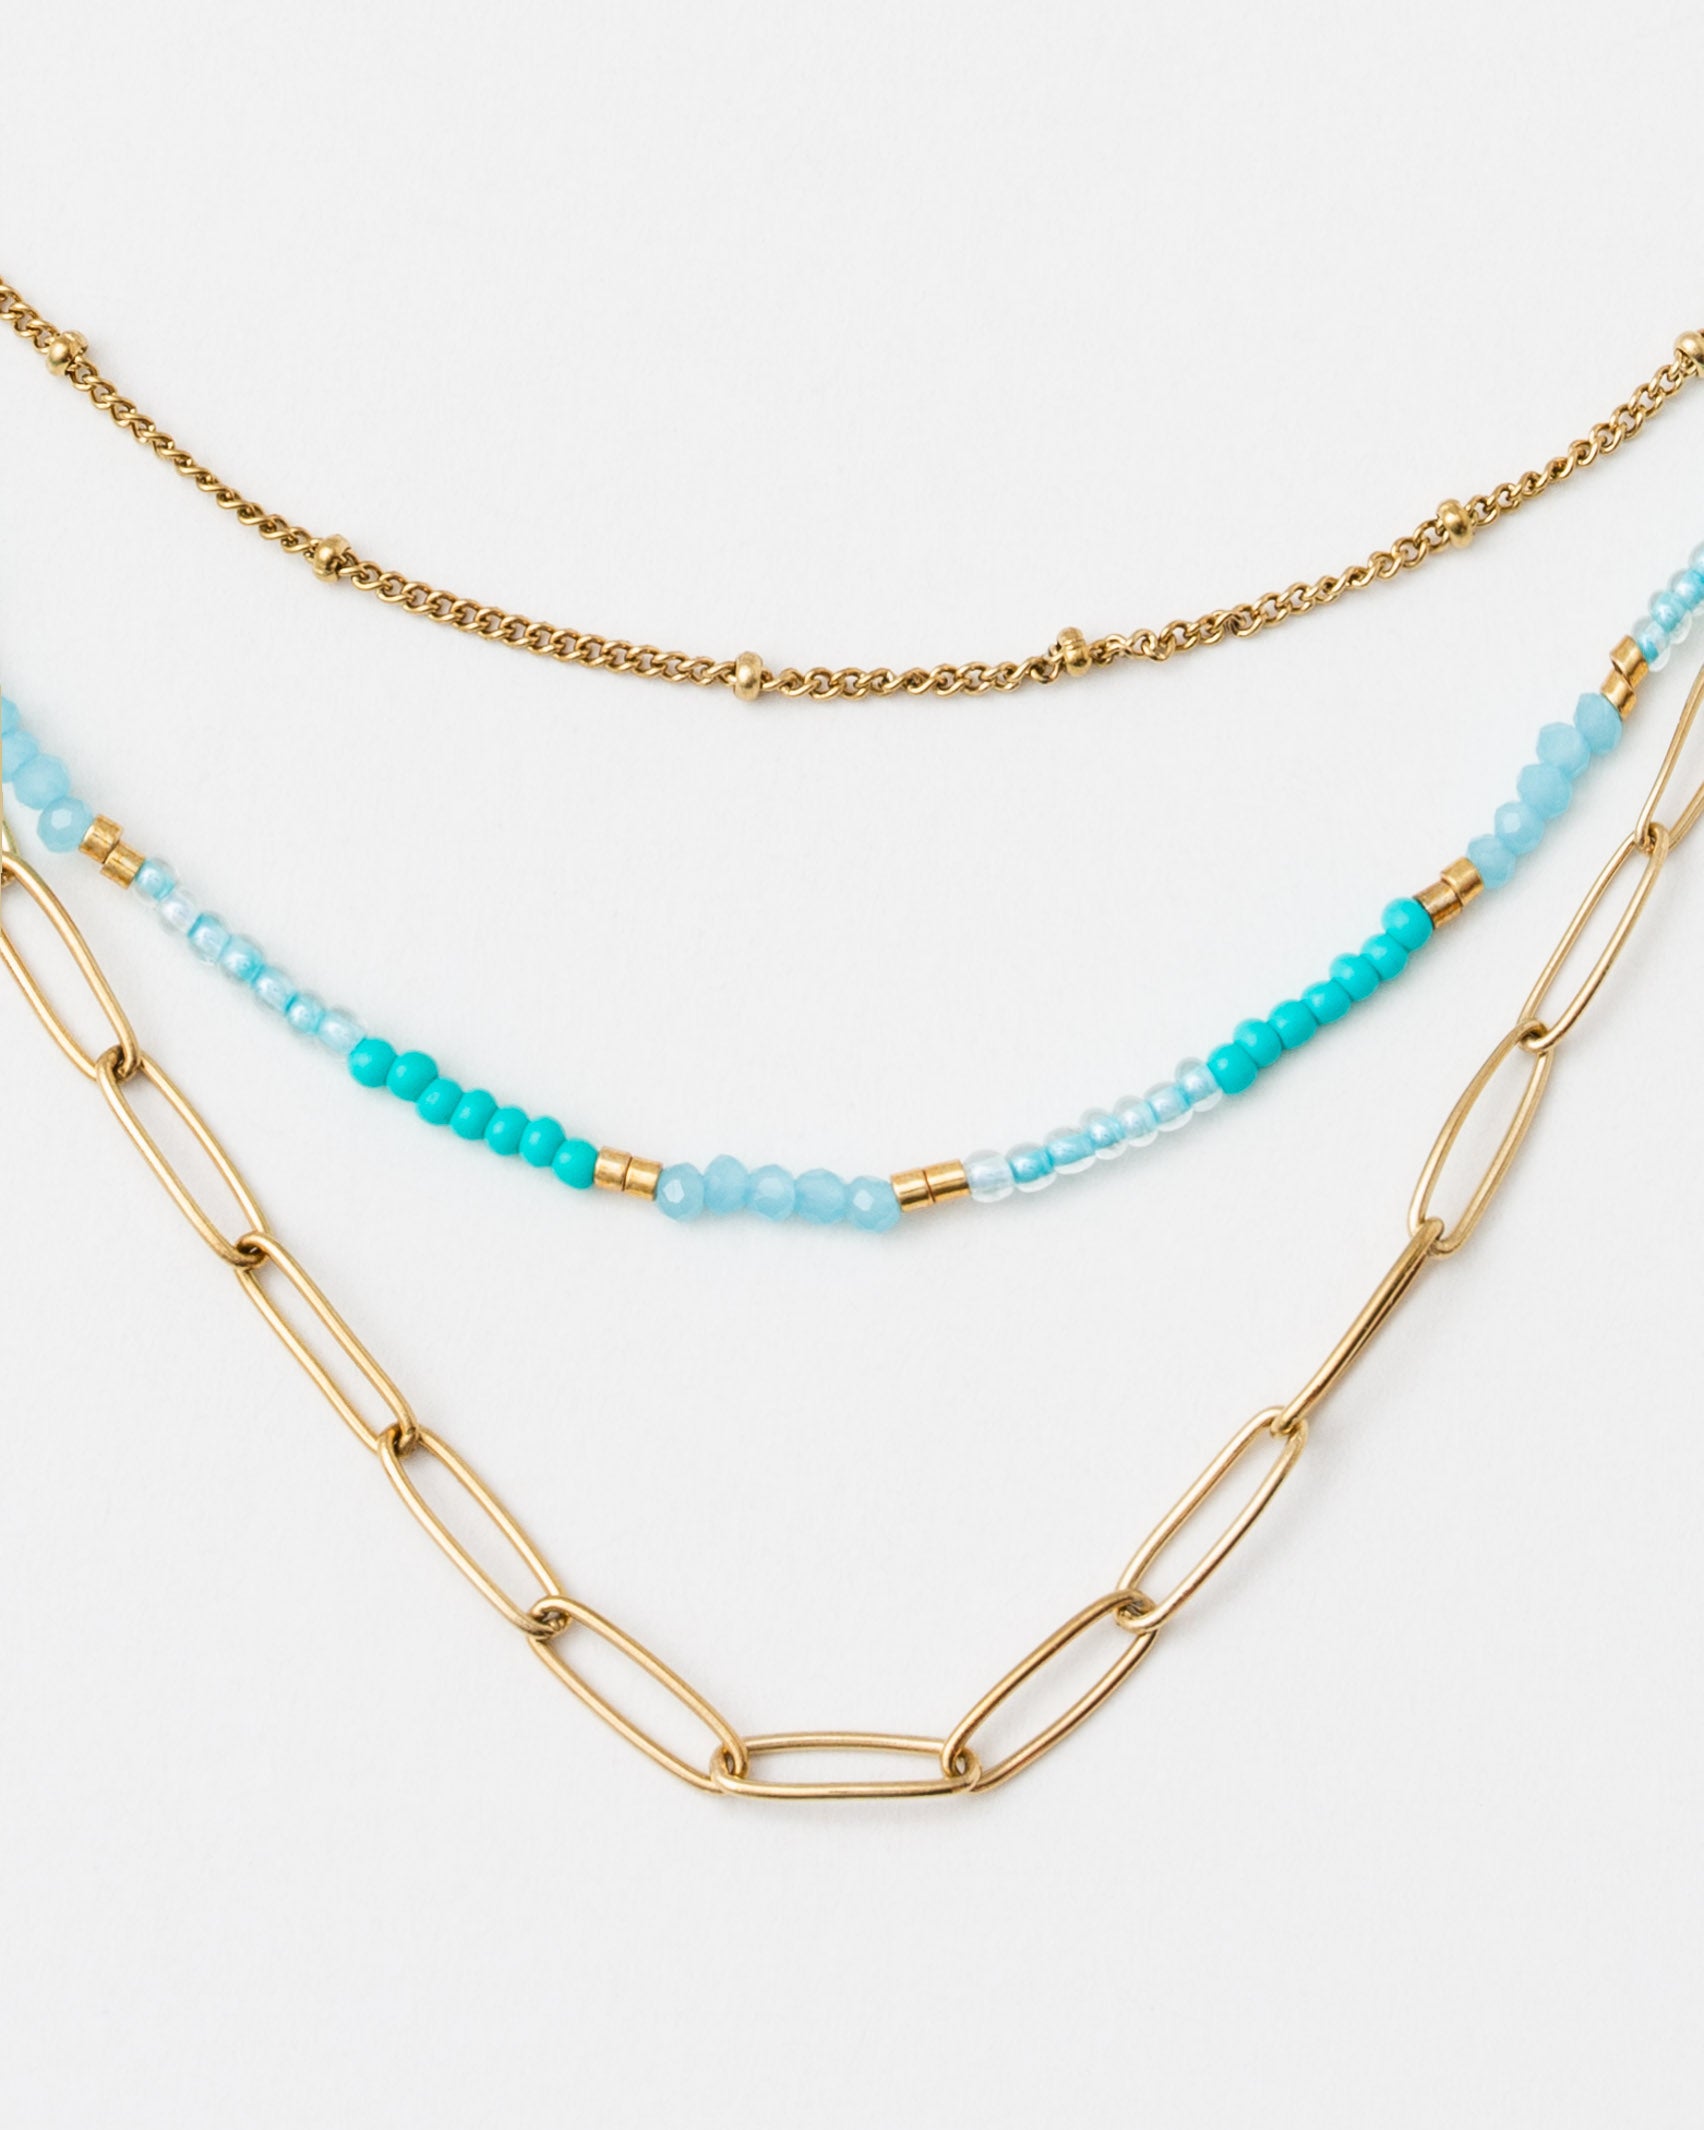 Mehrlagige Perlen- und Gliederkette - Broke + Schön#farbe_turquoise